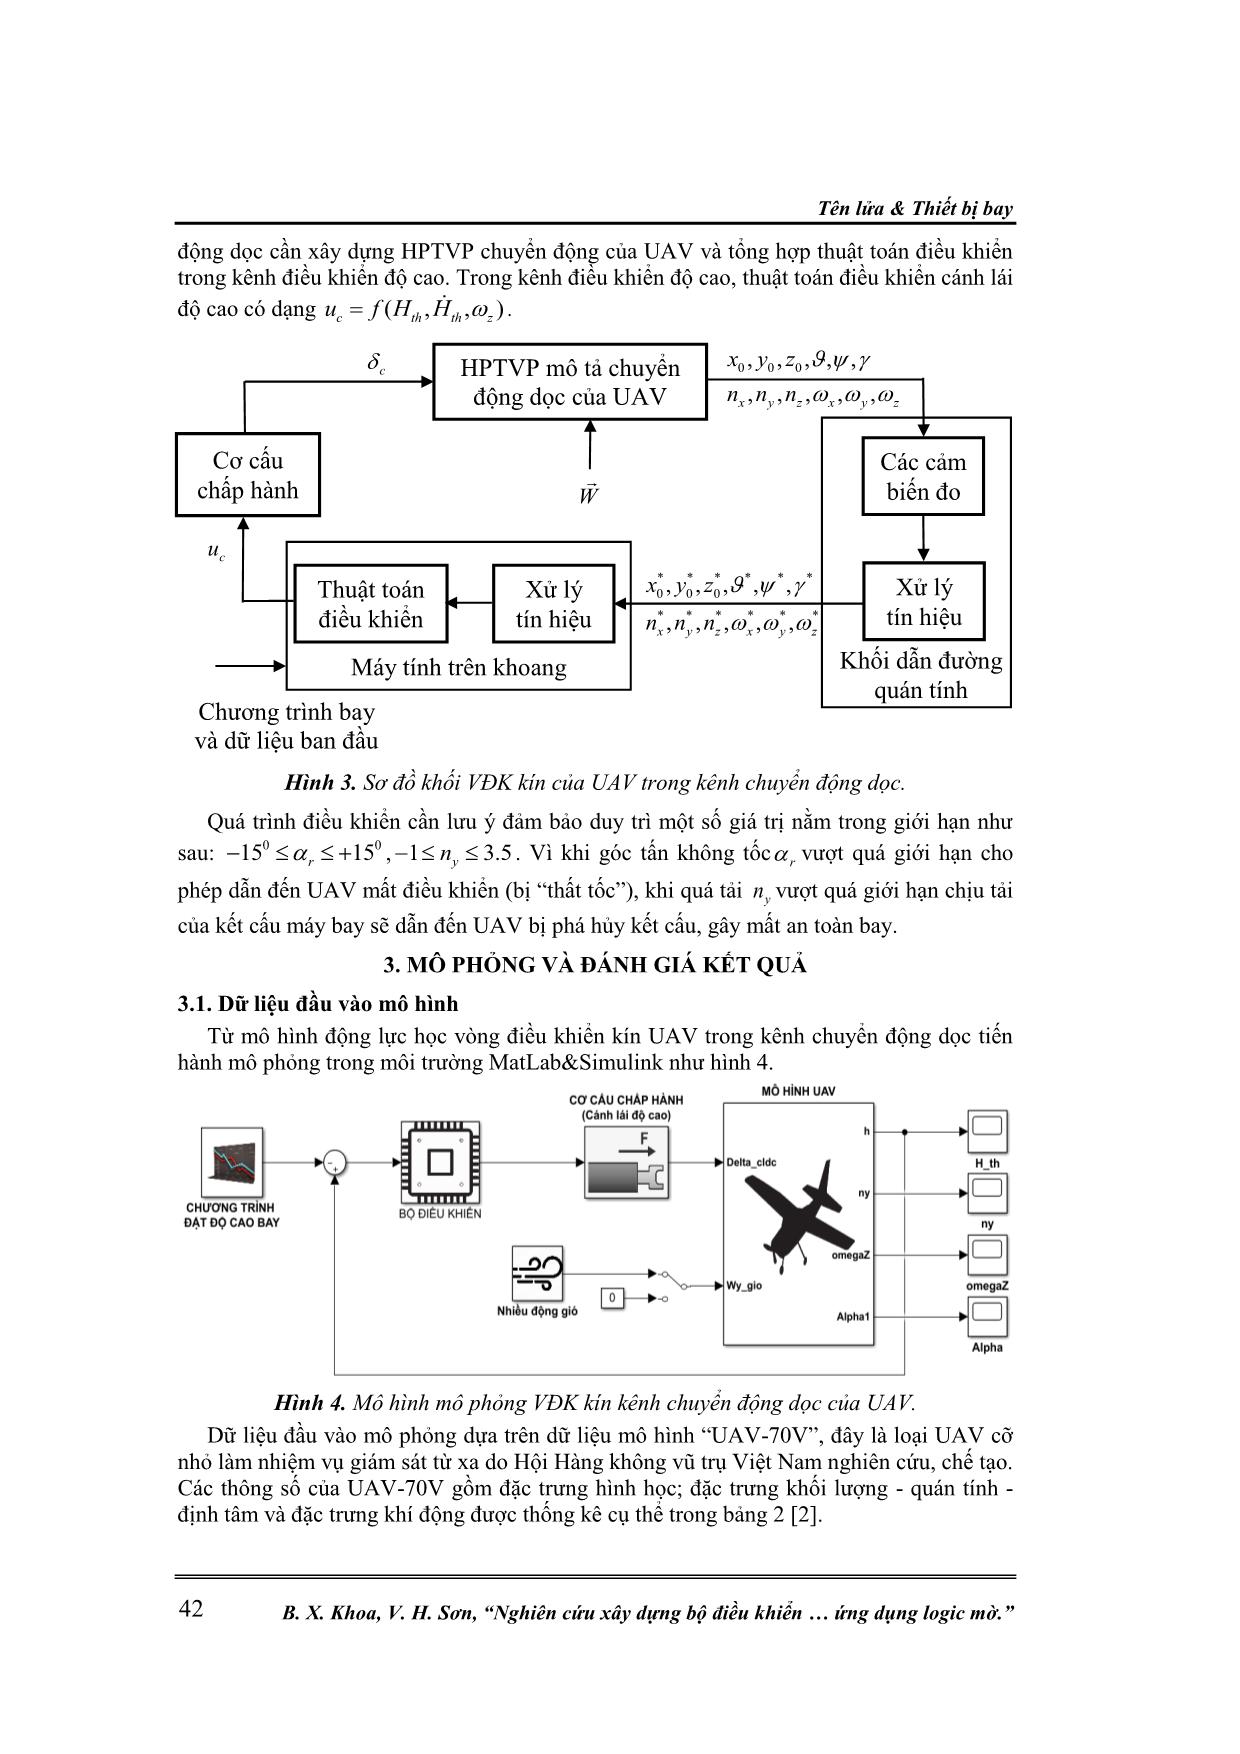 Nghiên cứu xây dựng bộ điều khiển cho UAV trong kênh chuyển động dọc ứng dụng logic mờ trang 5